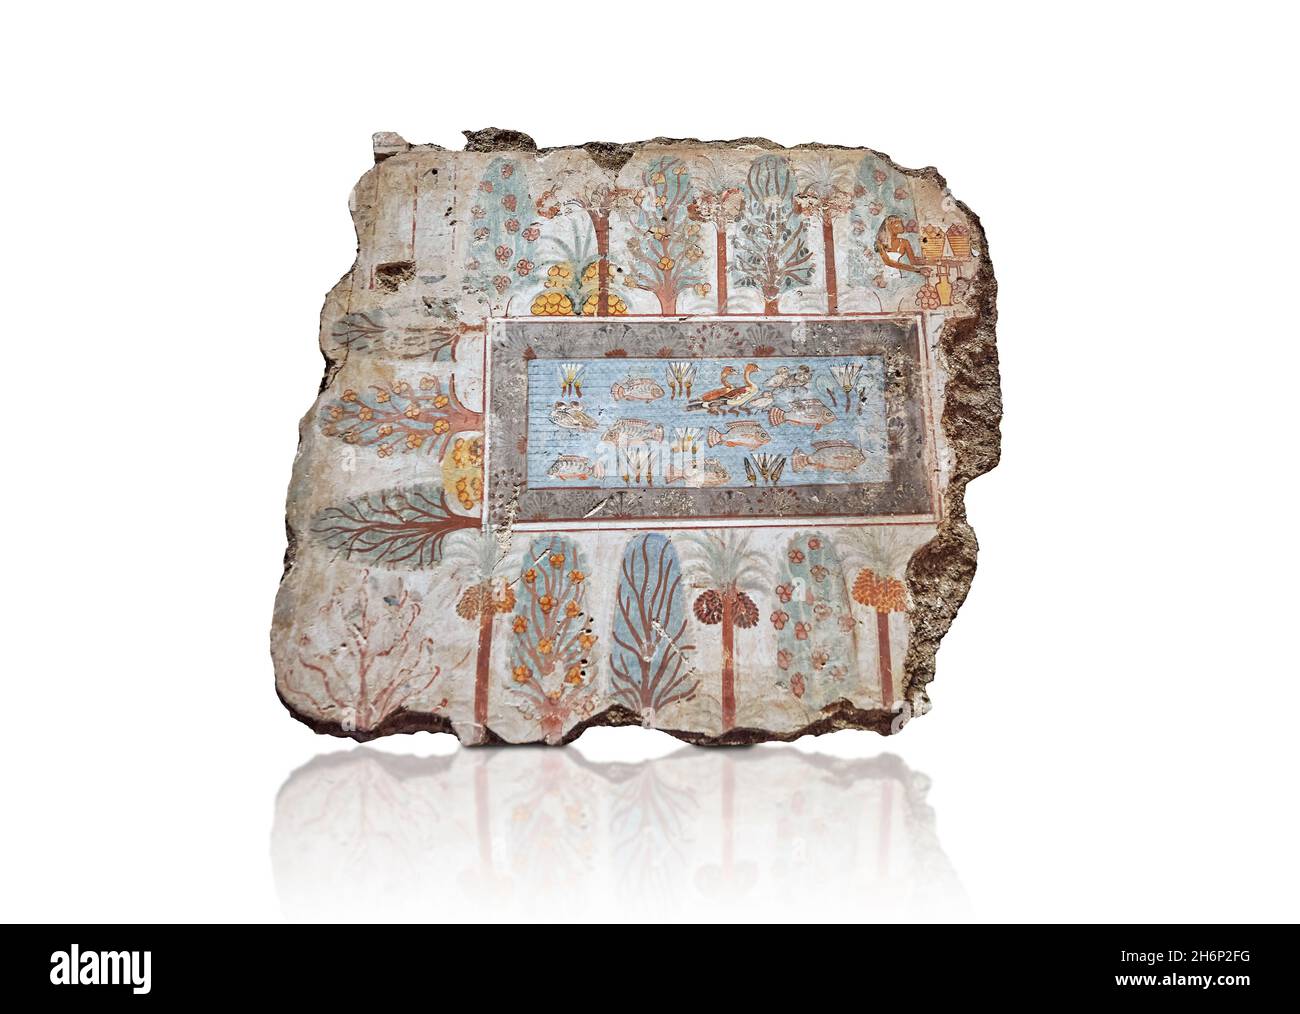 Tableau de la tombe de l'art mural égyptien antique : jardin de Nebamun à l'ouest, tombe de Nebamun Thèbes, Circa 1350BC, dynastie 18e.Musée britannique EA37983.F Banque D'Images